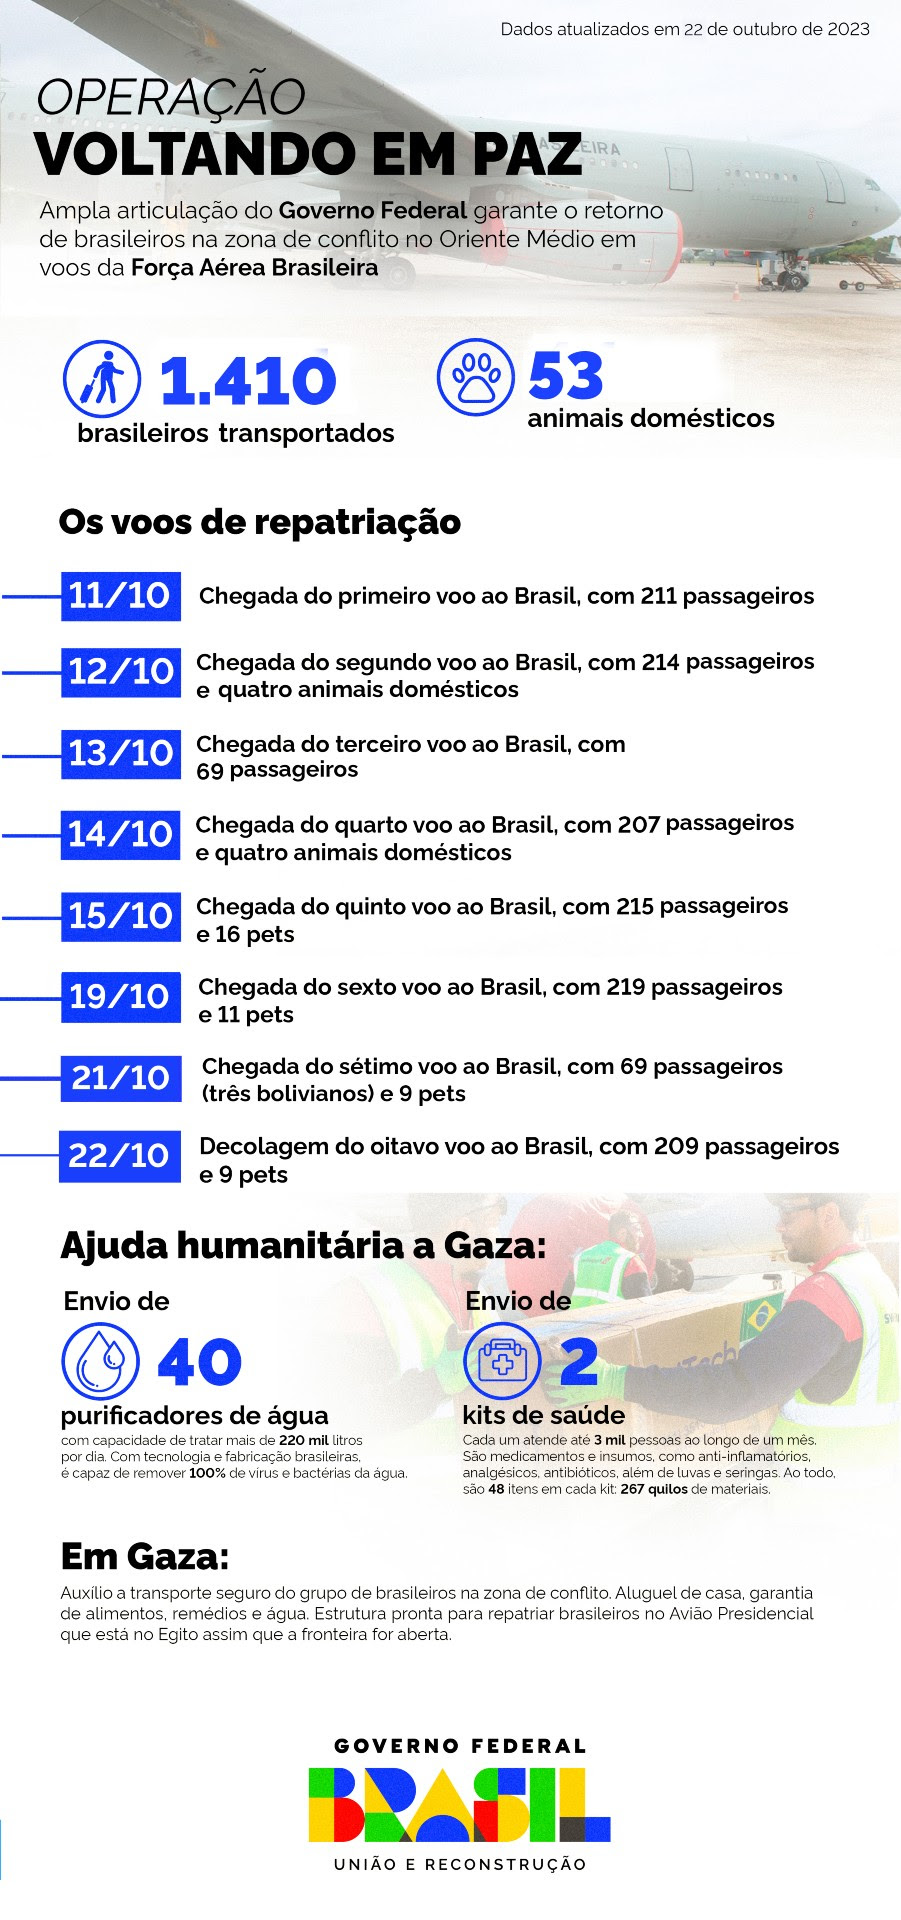 Infográfico com os principais dados da Operação Voltando em Paz

